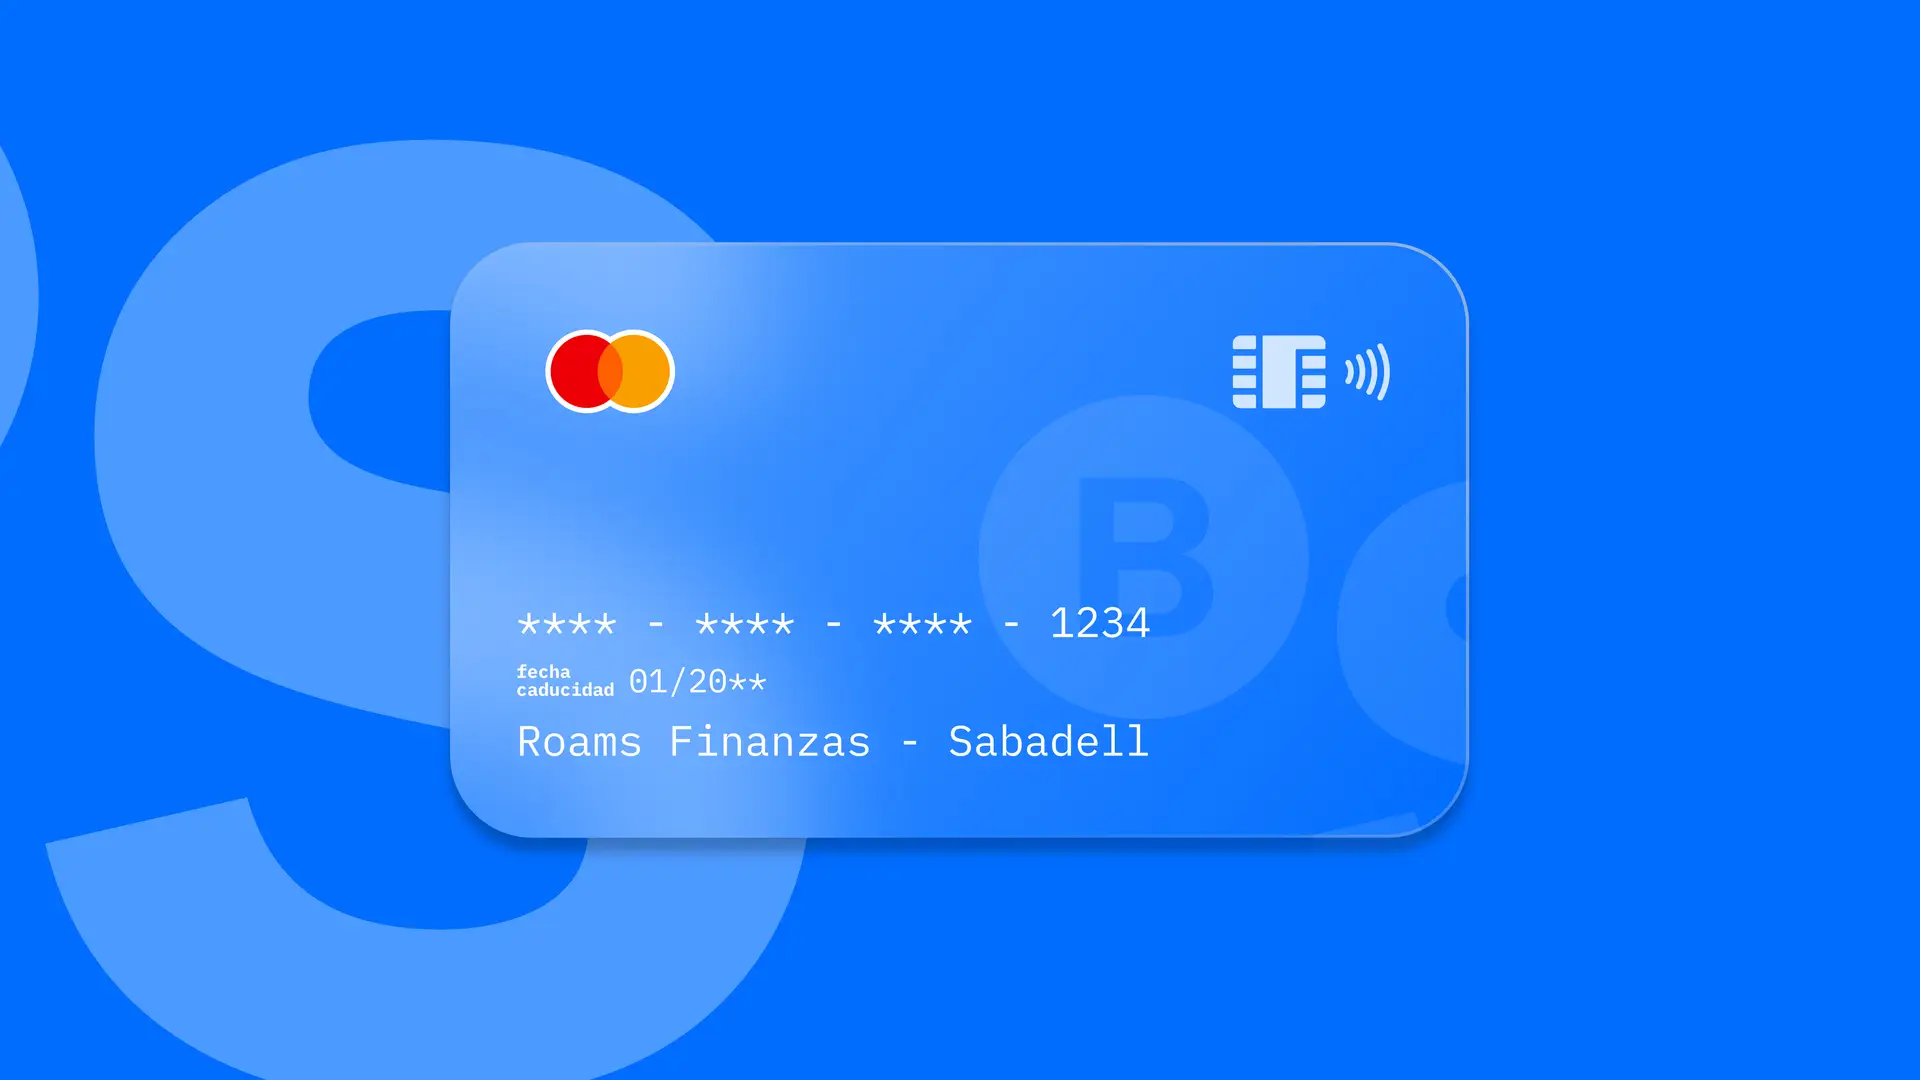 Simulación de una tarjeta de la entidad financiera Sabadell creada por Roams.